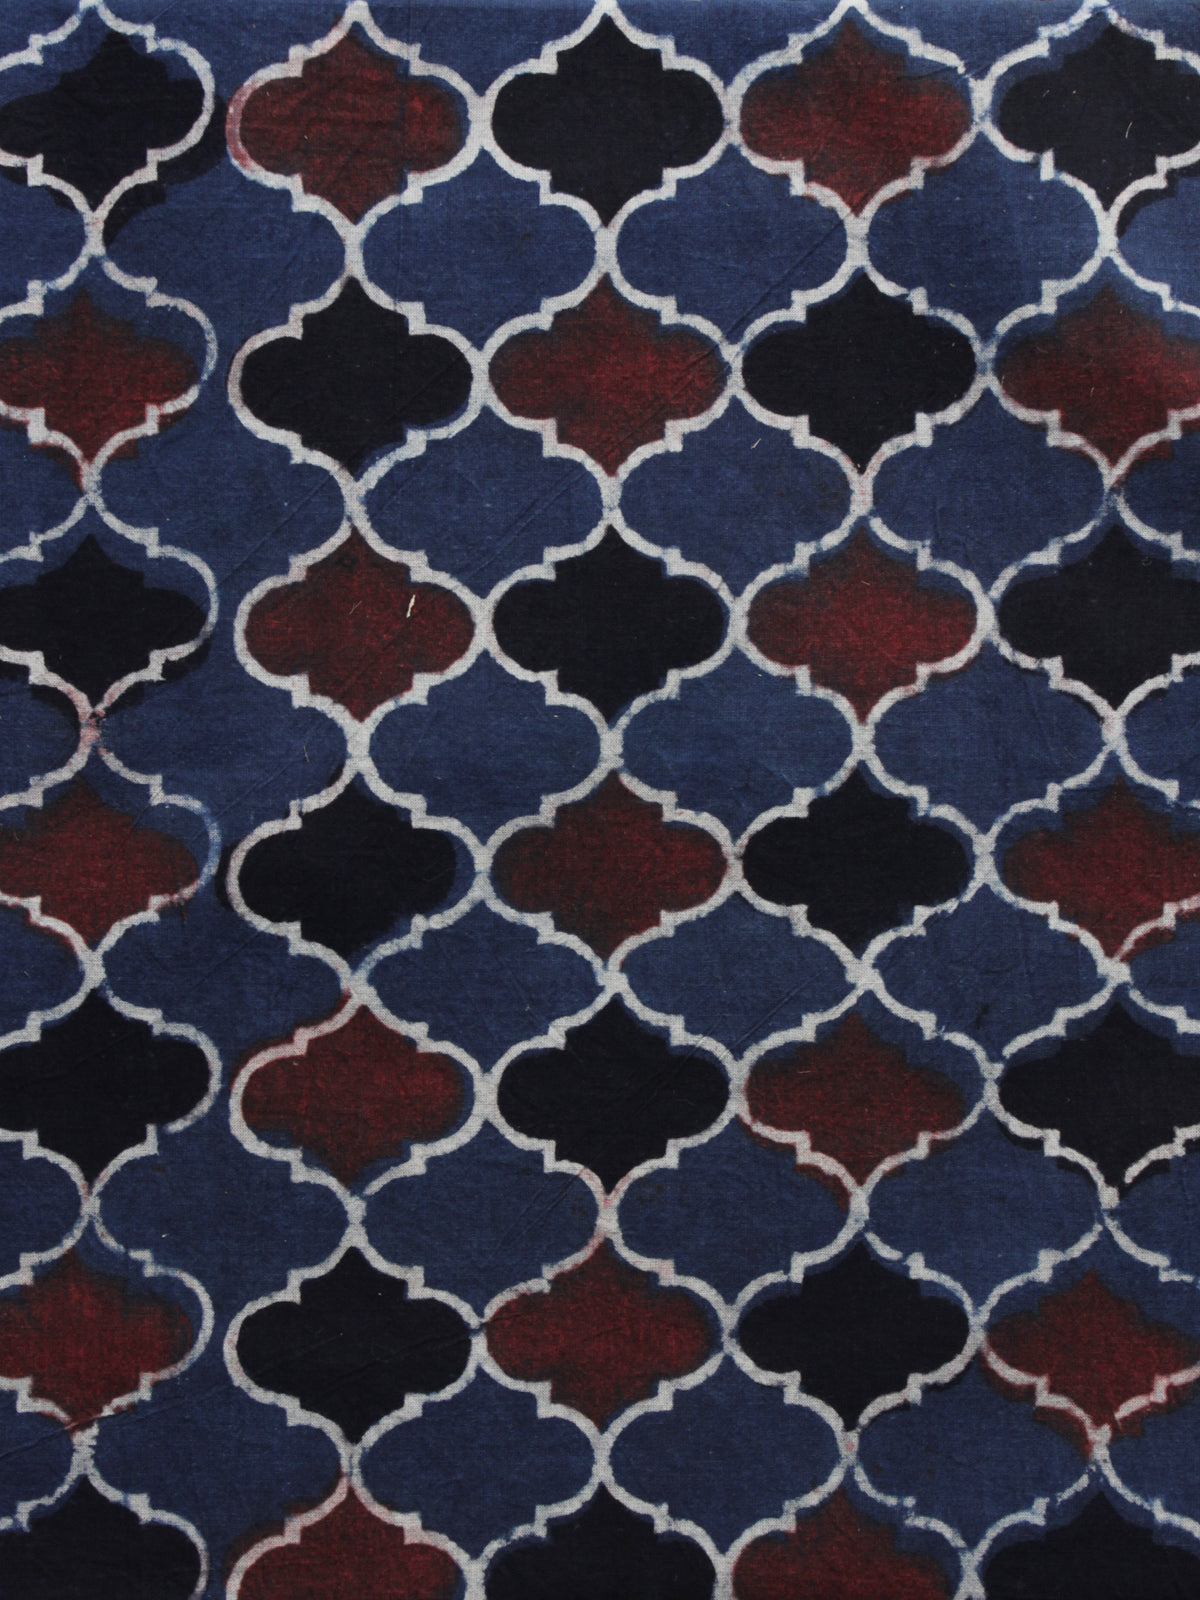 Maroon Black Indigo Ajrakh Printed Cotton Fabric Per Meter - F003F1176